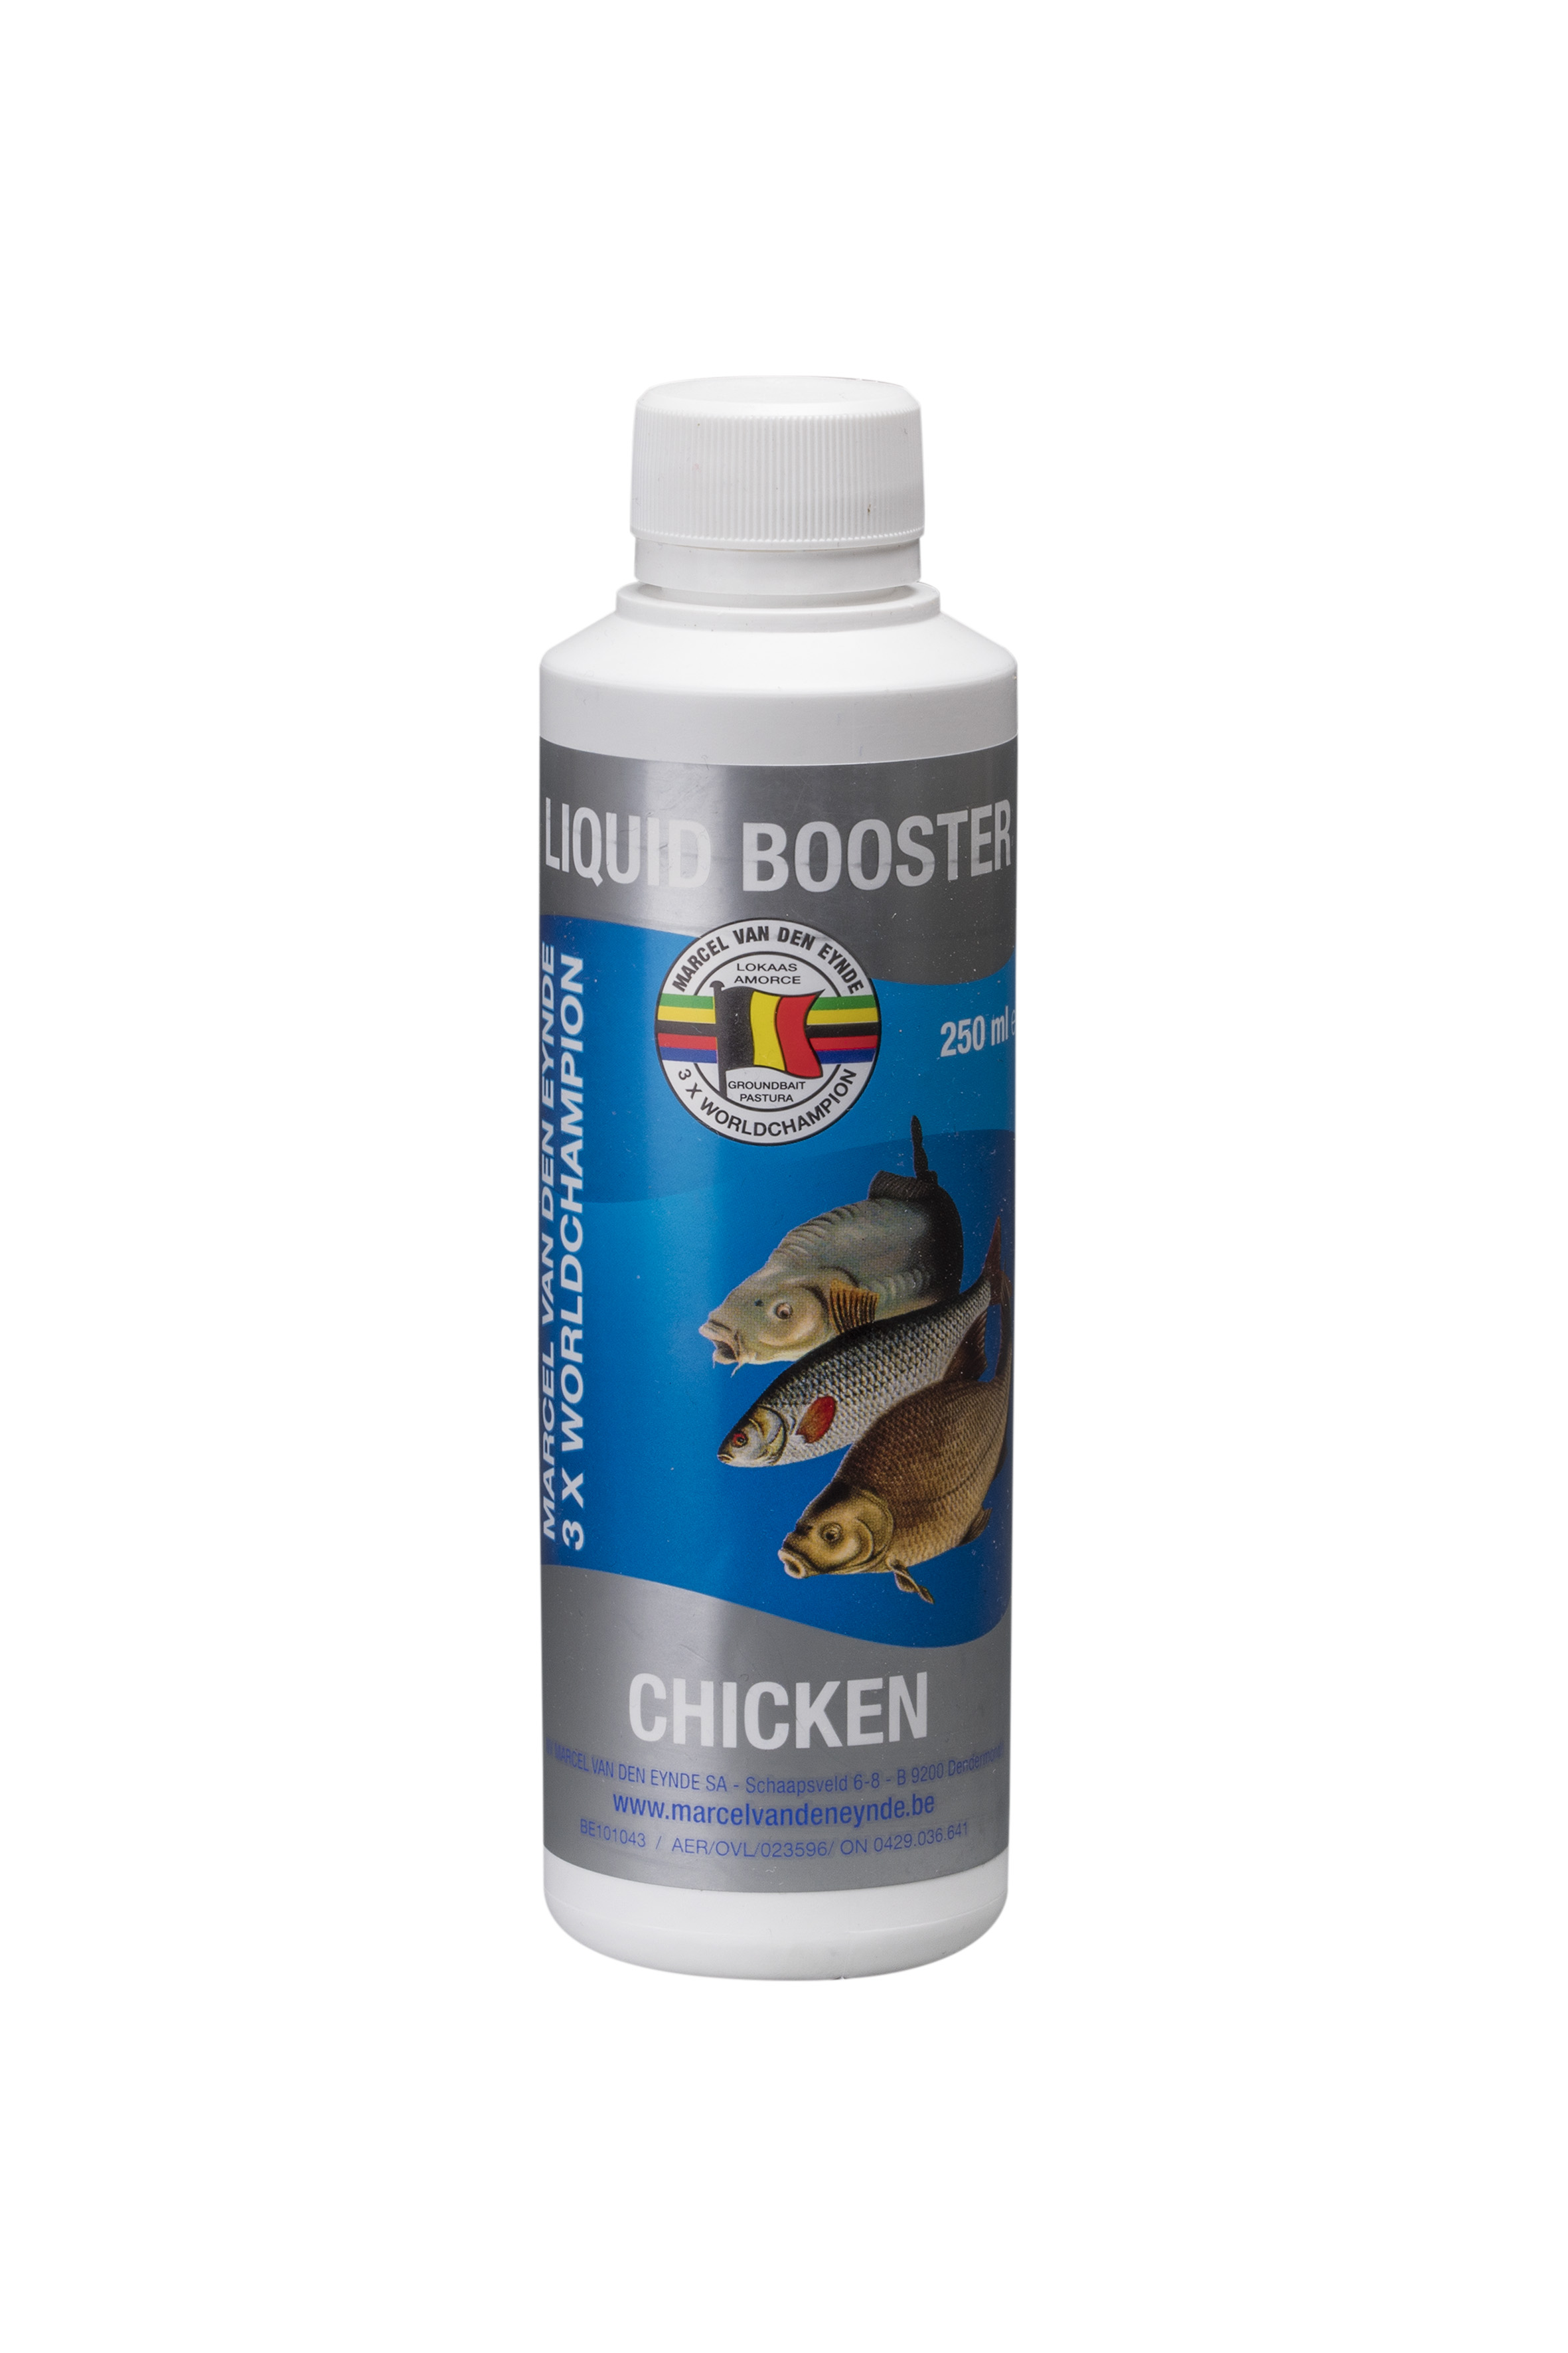 VDE Liquid Booster Chicken 250 ml (Piletina) -  Ime tečnog pojačivača govori sve, poboljšaće ukus i miris vašeg mamca. Koristili smo različite sastojke kako bismo napravili ukusan proizvod koji se može koristiti u mamcima, peletima i česticama. Tečni pojačivači su mnogo intenzivniji od našeg asortimana tekućih aroma, zato preporučujemo upotrebu 125 ml za 4 kg mamaca. Cijena: 12.50 BAM